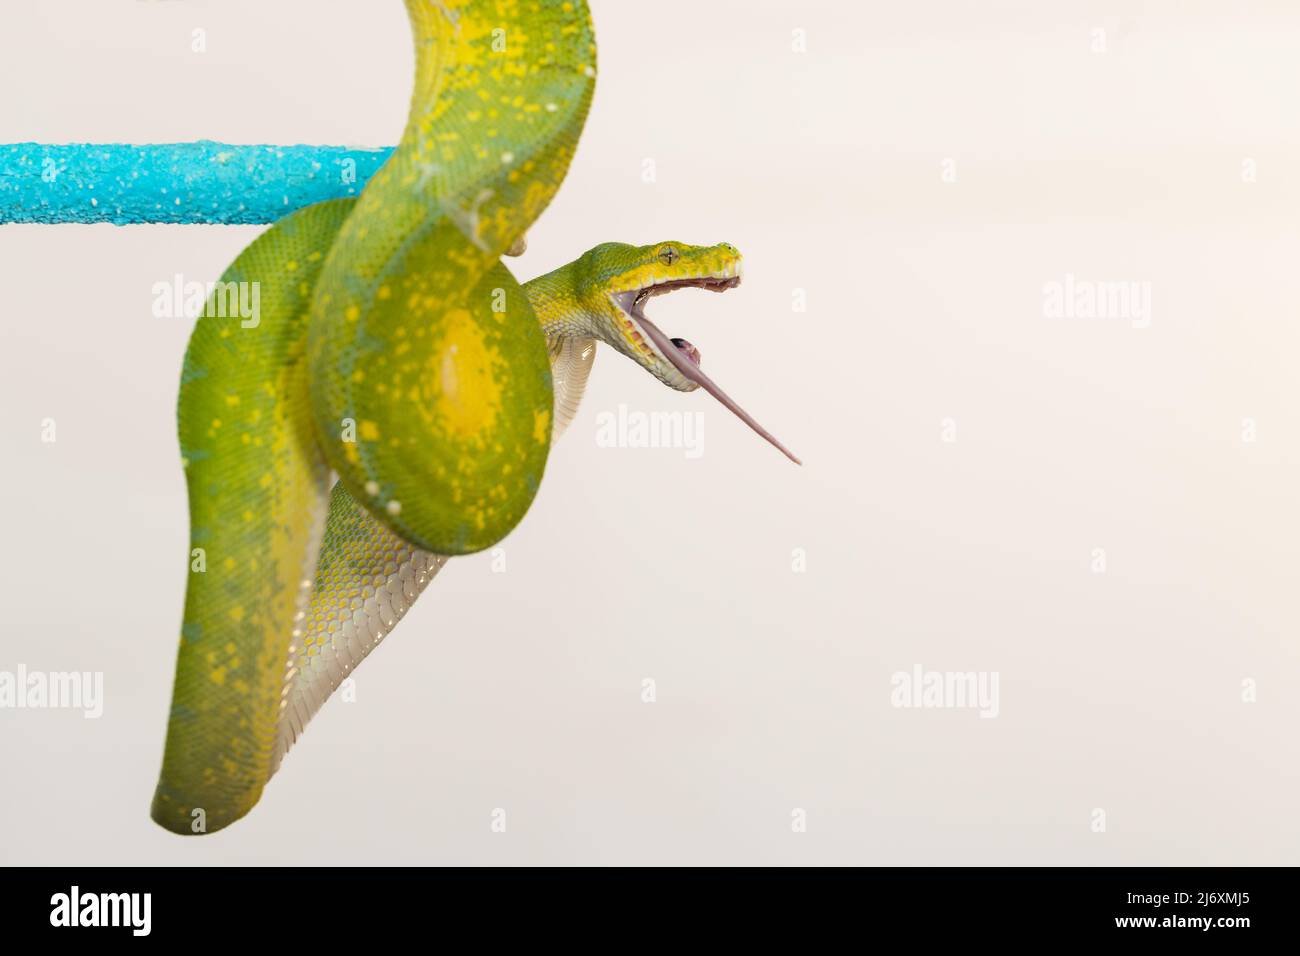 Corallus caninus - serpent vert enroulé dans une balle. Banque D'Images